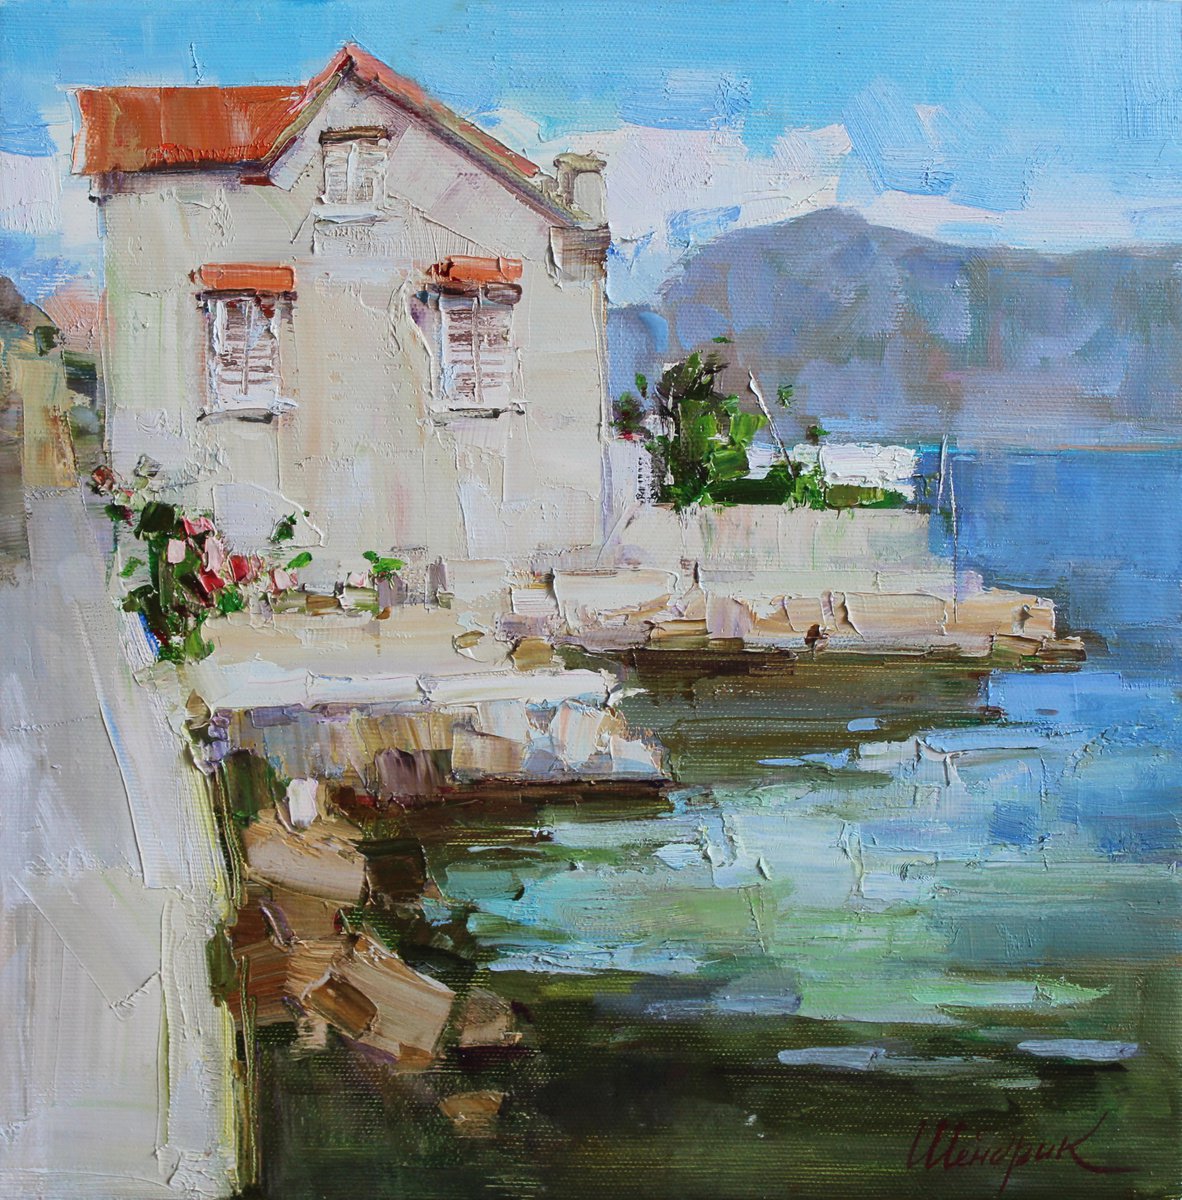 House in the Kotor Bay by Tetiana Shendryk